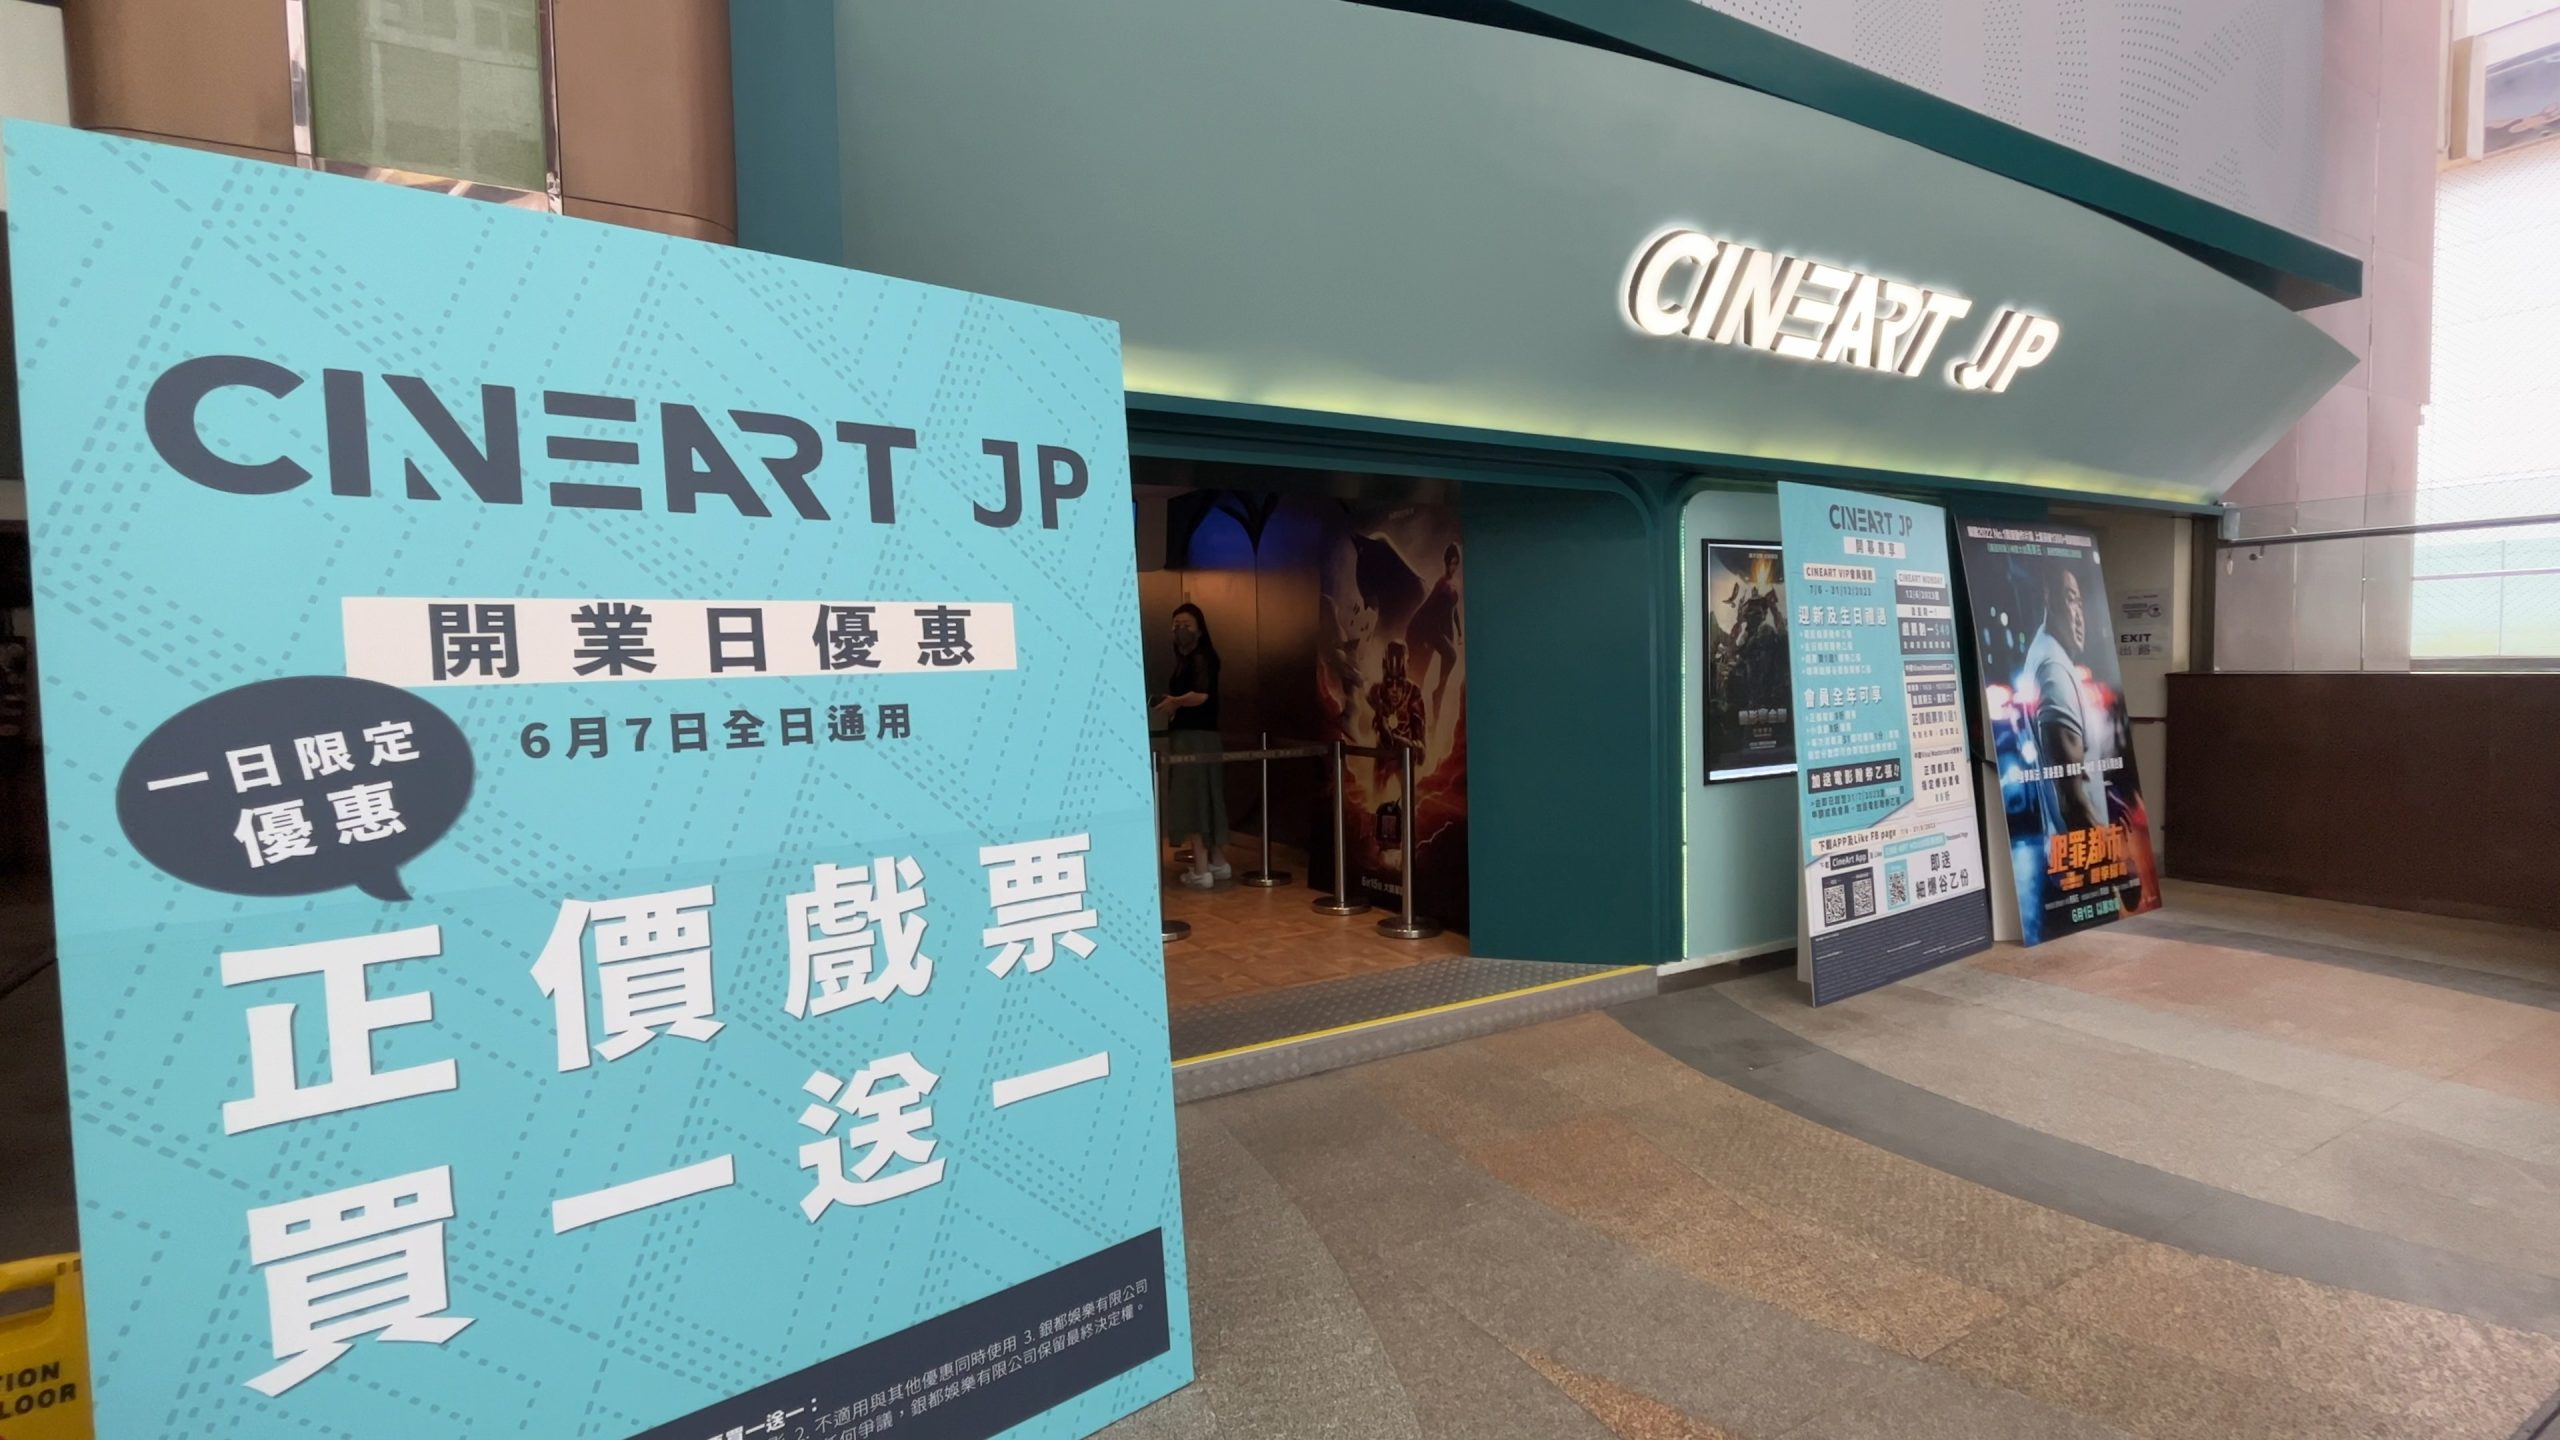 CINEART JP 影藝戲院正式進駐銅鑼灣翡翠明珠廣場: 逢周一票價劃一$40